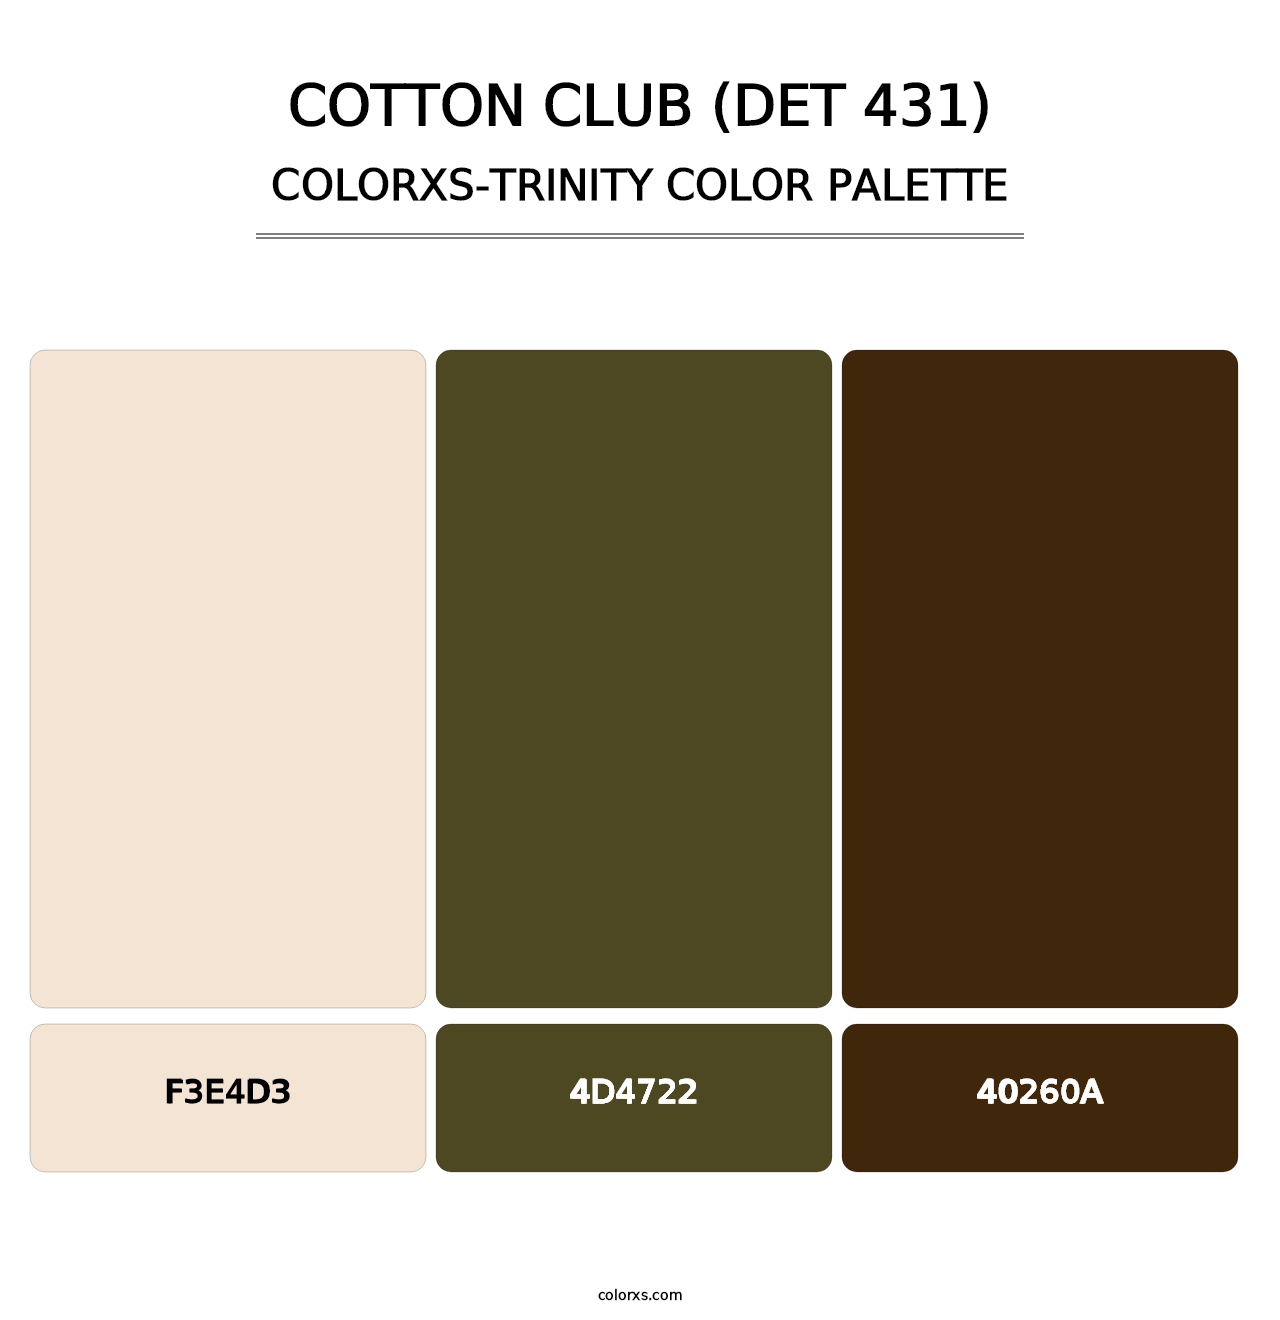 Cotton Club (DET 431) - Colorxs Trinity Palette